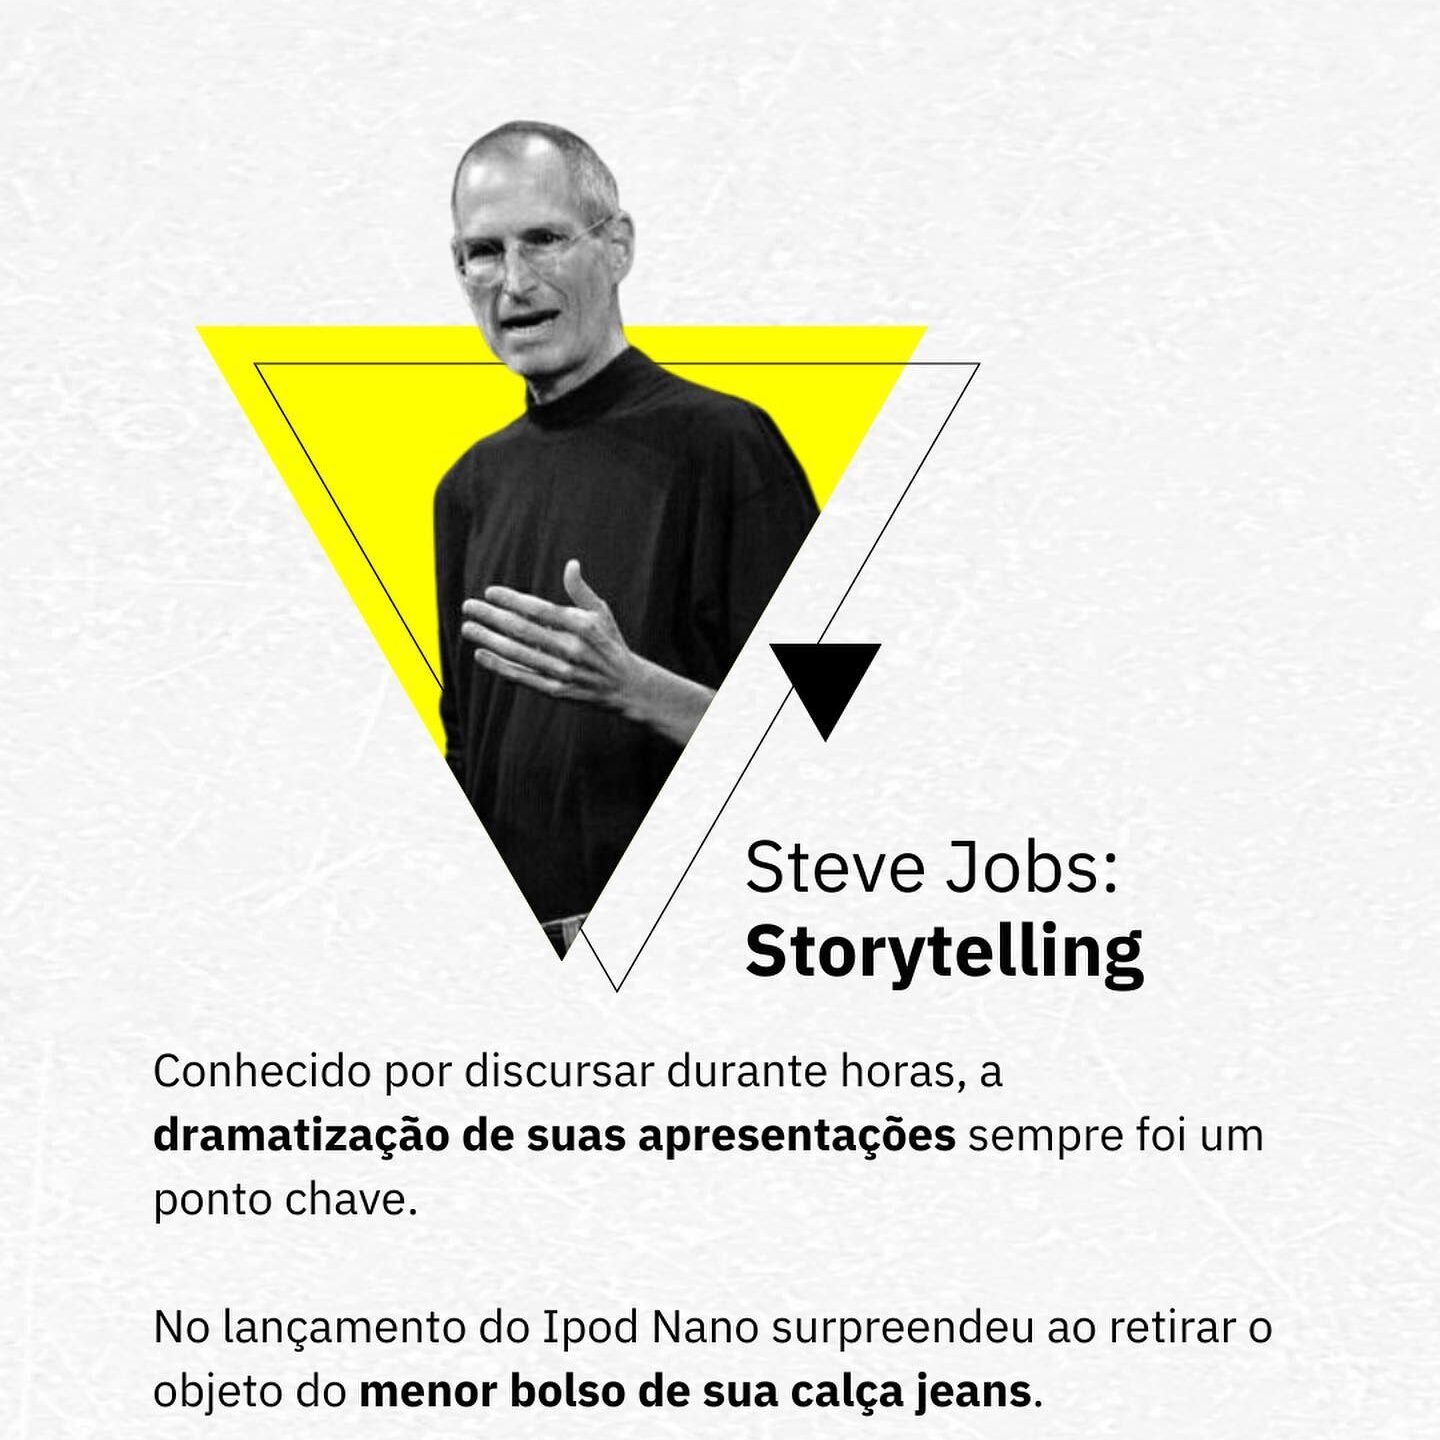 Steve Jobs e o storytelling aplicado em sua marca